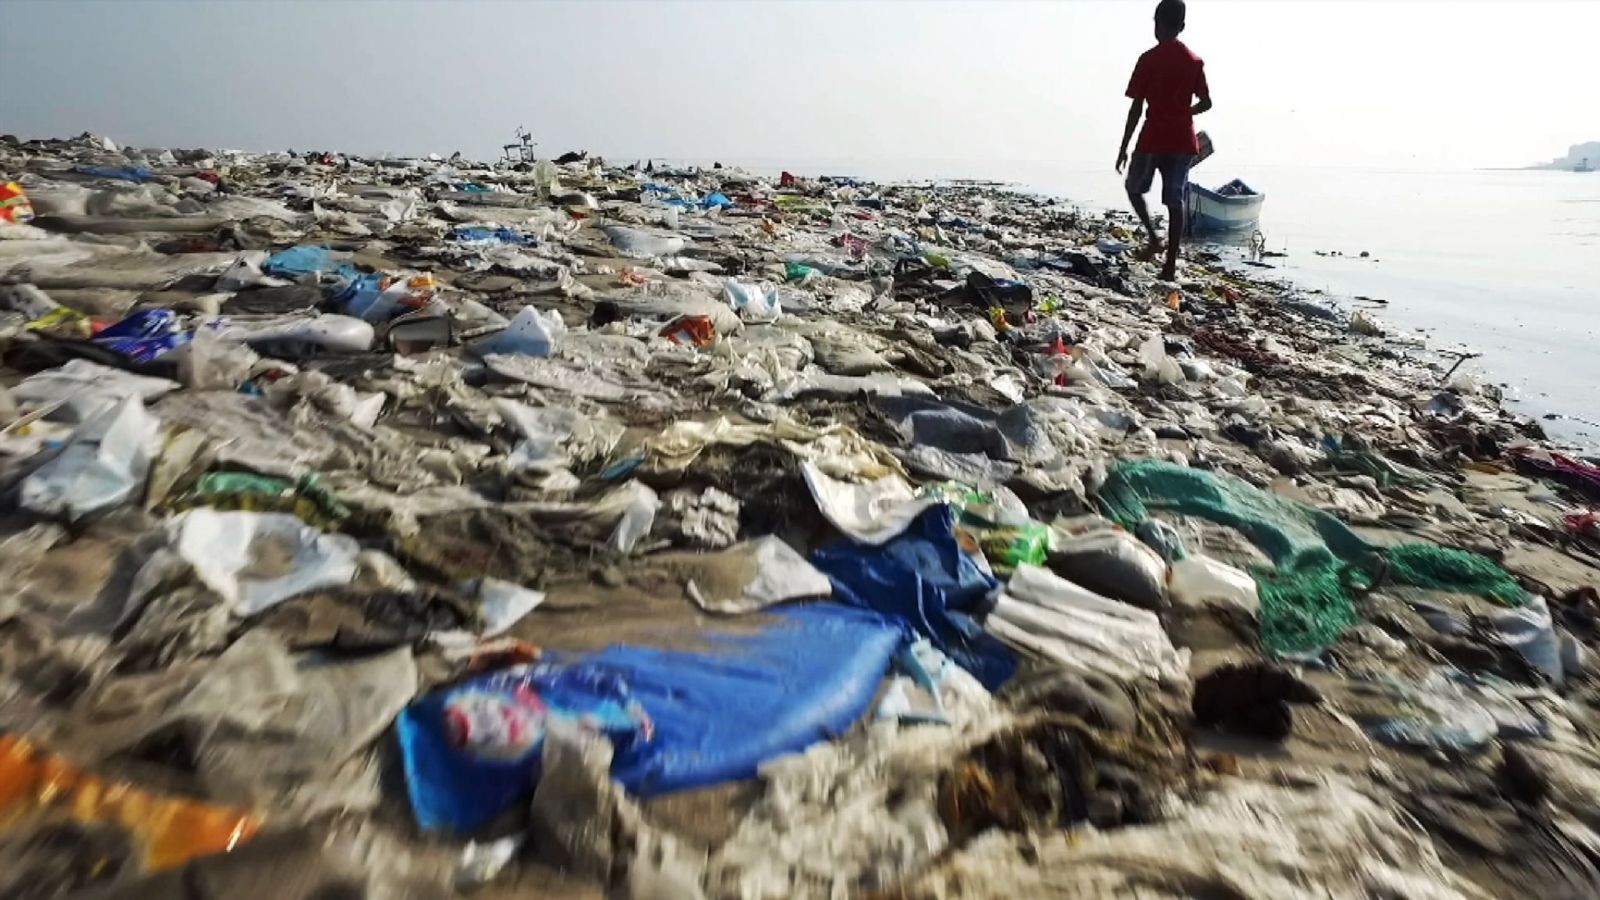 Ocean rescue è la campagna ideata da Sky per sensibilizzare sull'utilizzo della plastica che sta uccidendo gli oceani